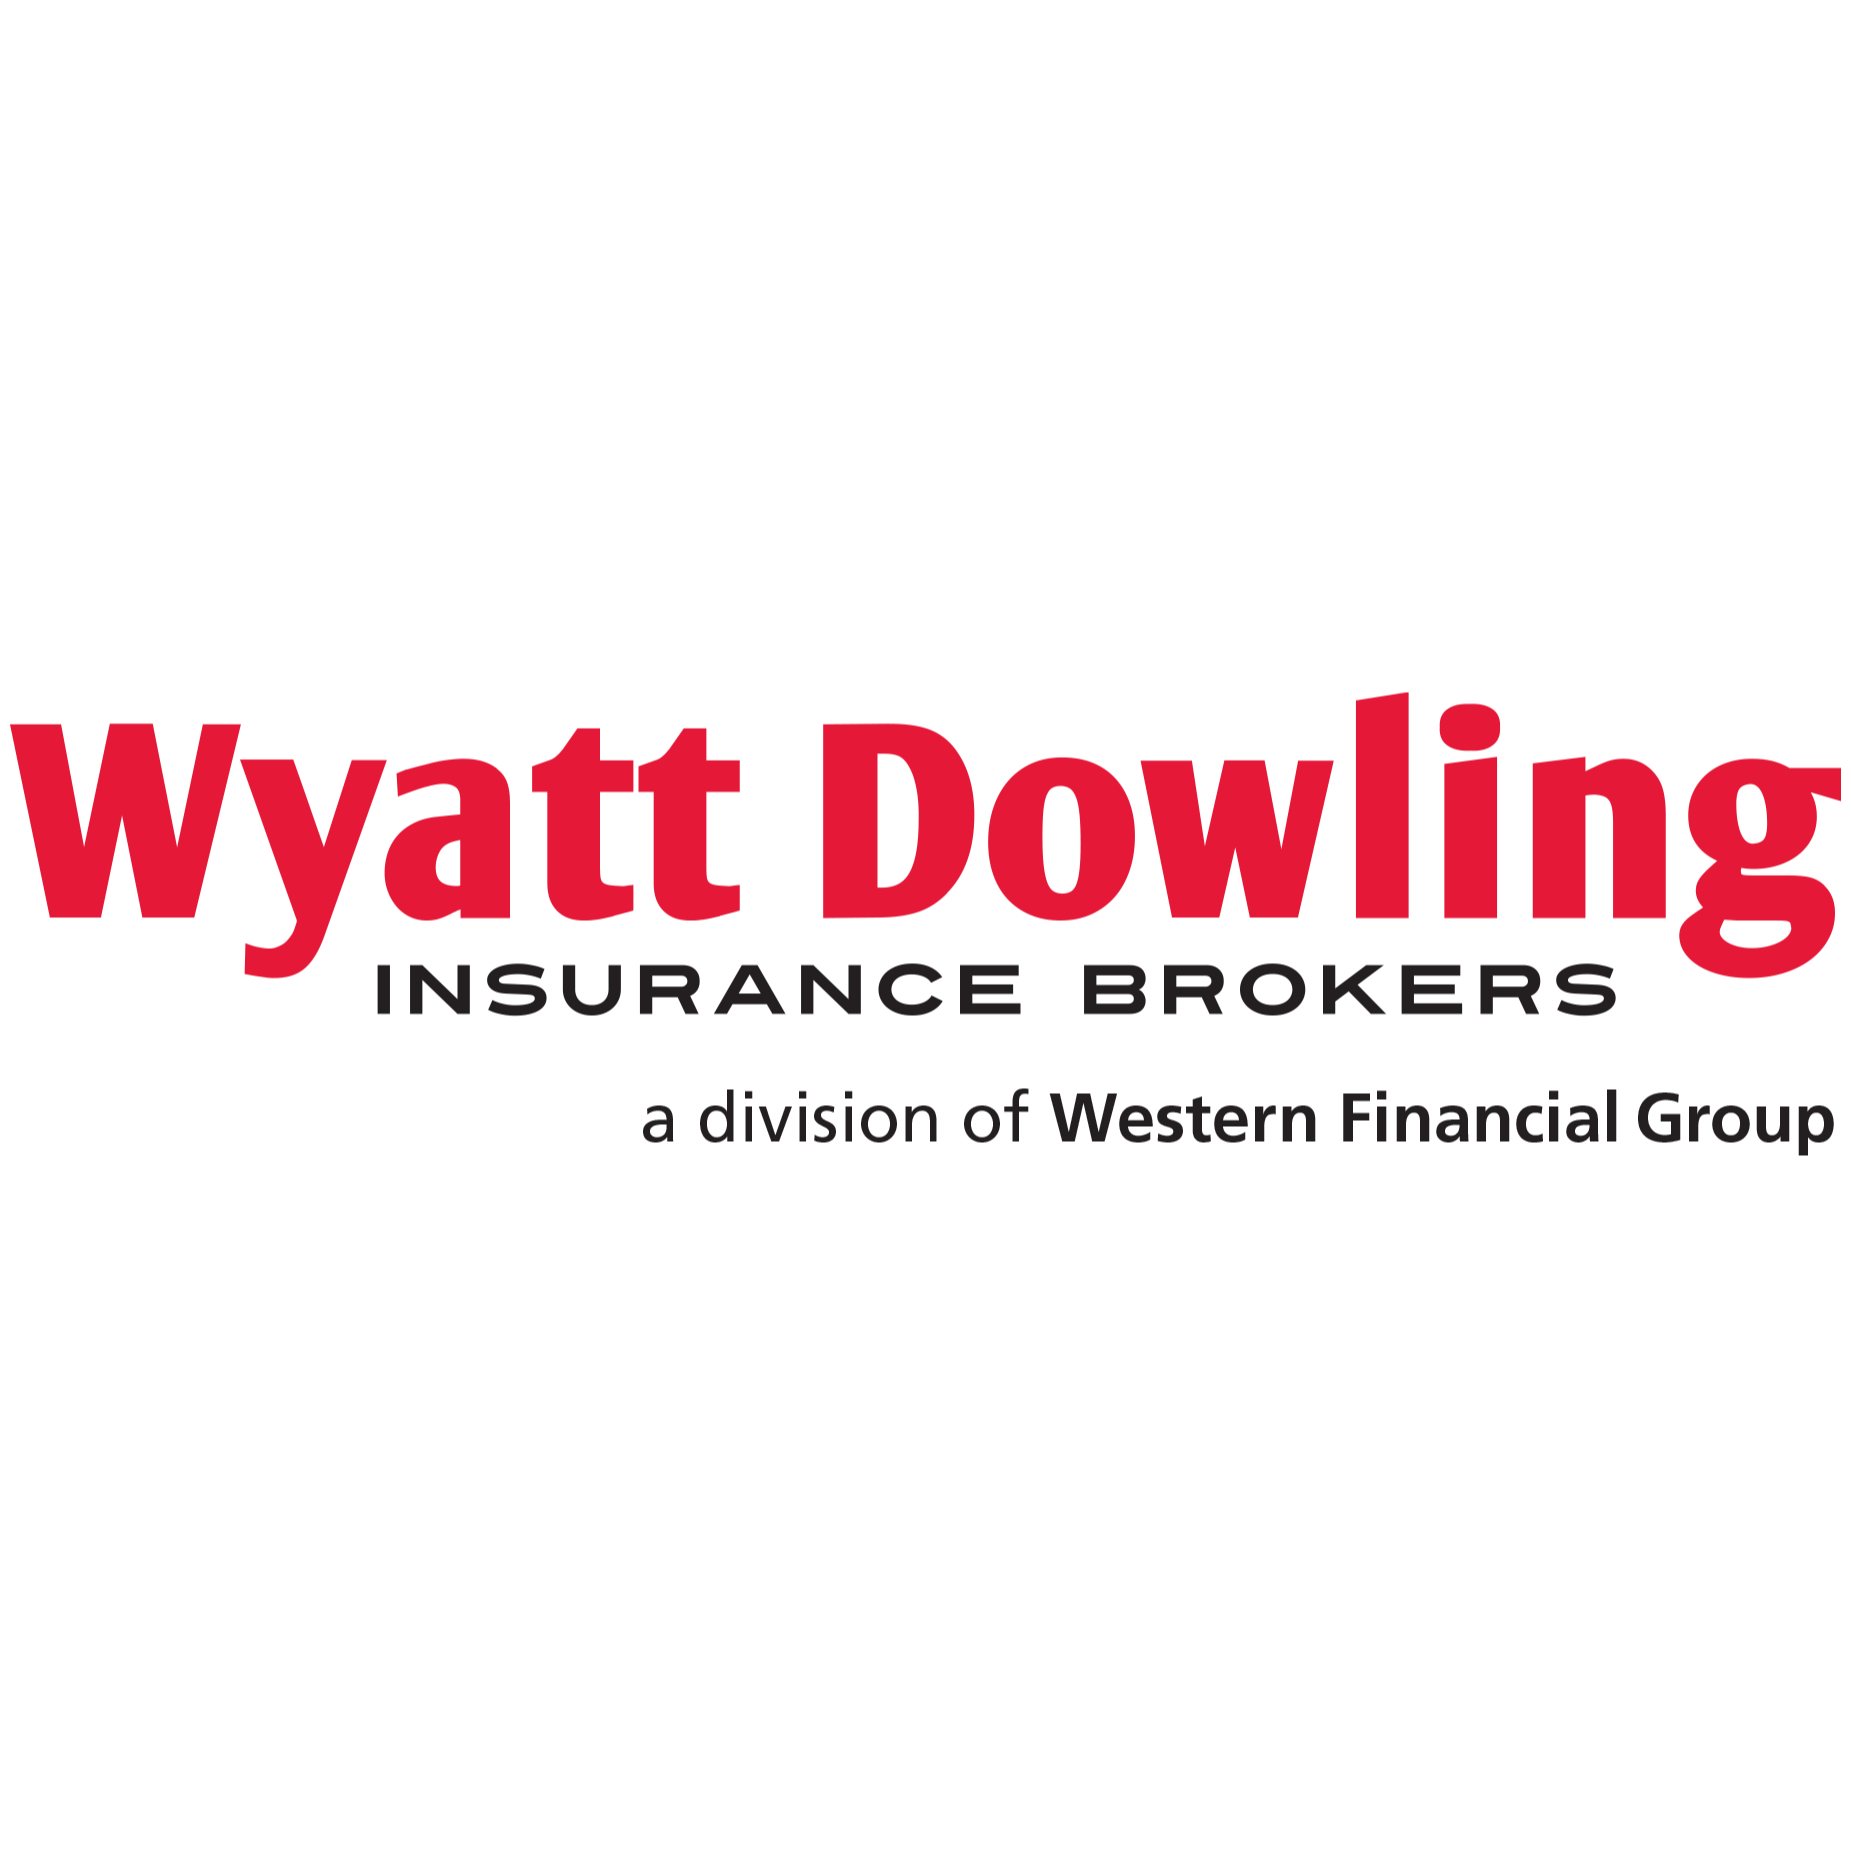 Wyatt Dowling Insurance Brokers - Agents d'assurance